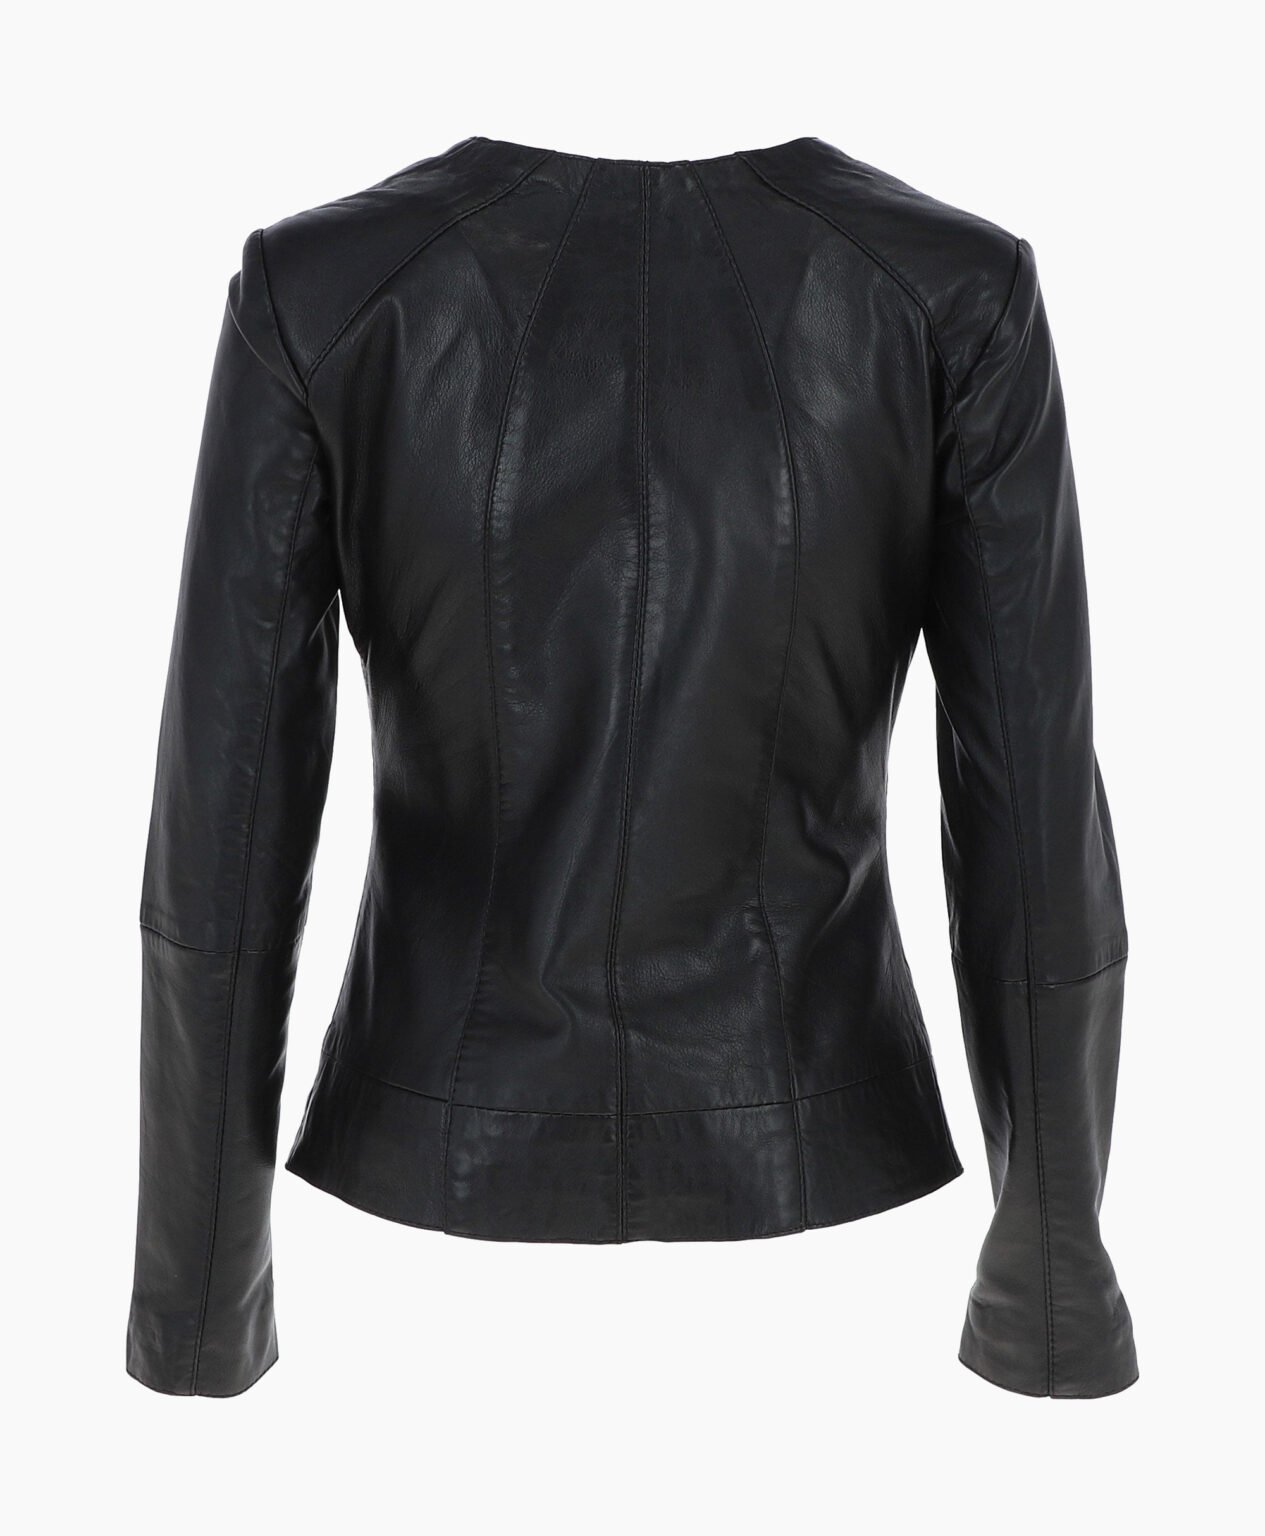 vogue-jacket-leather-jacket-black-cordova-image-202